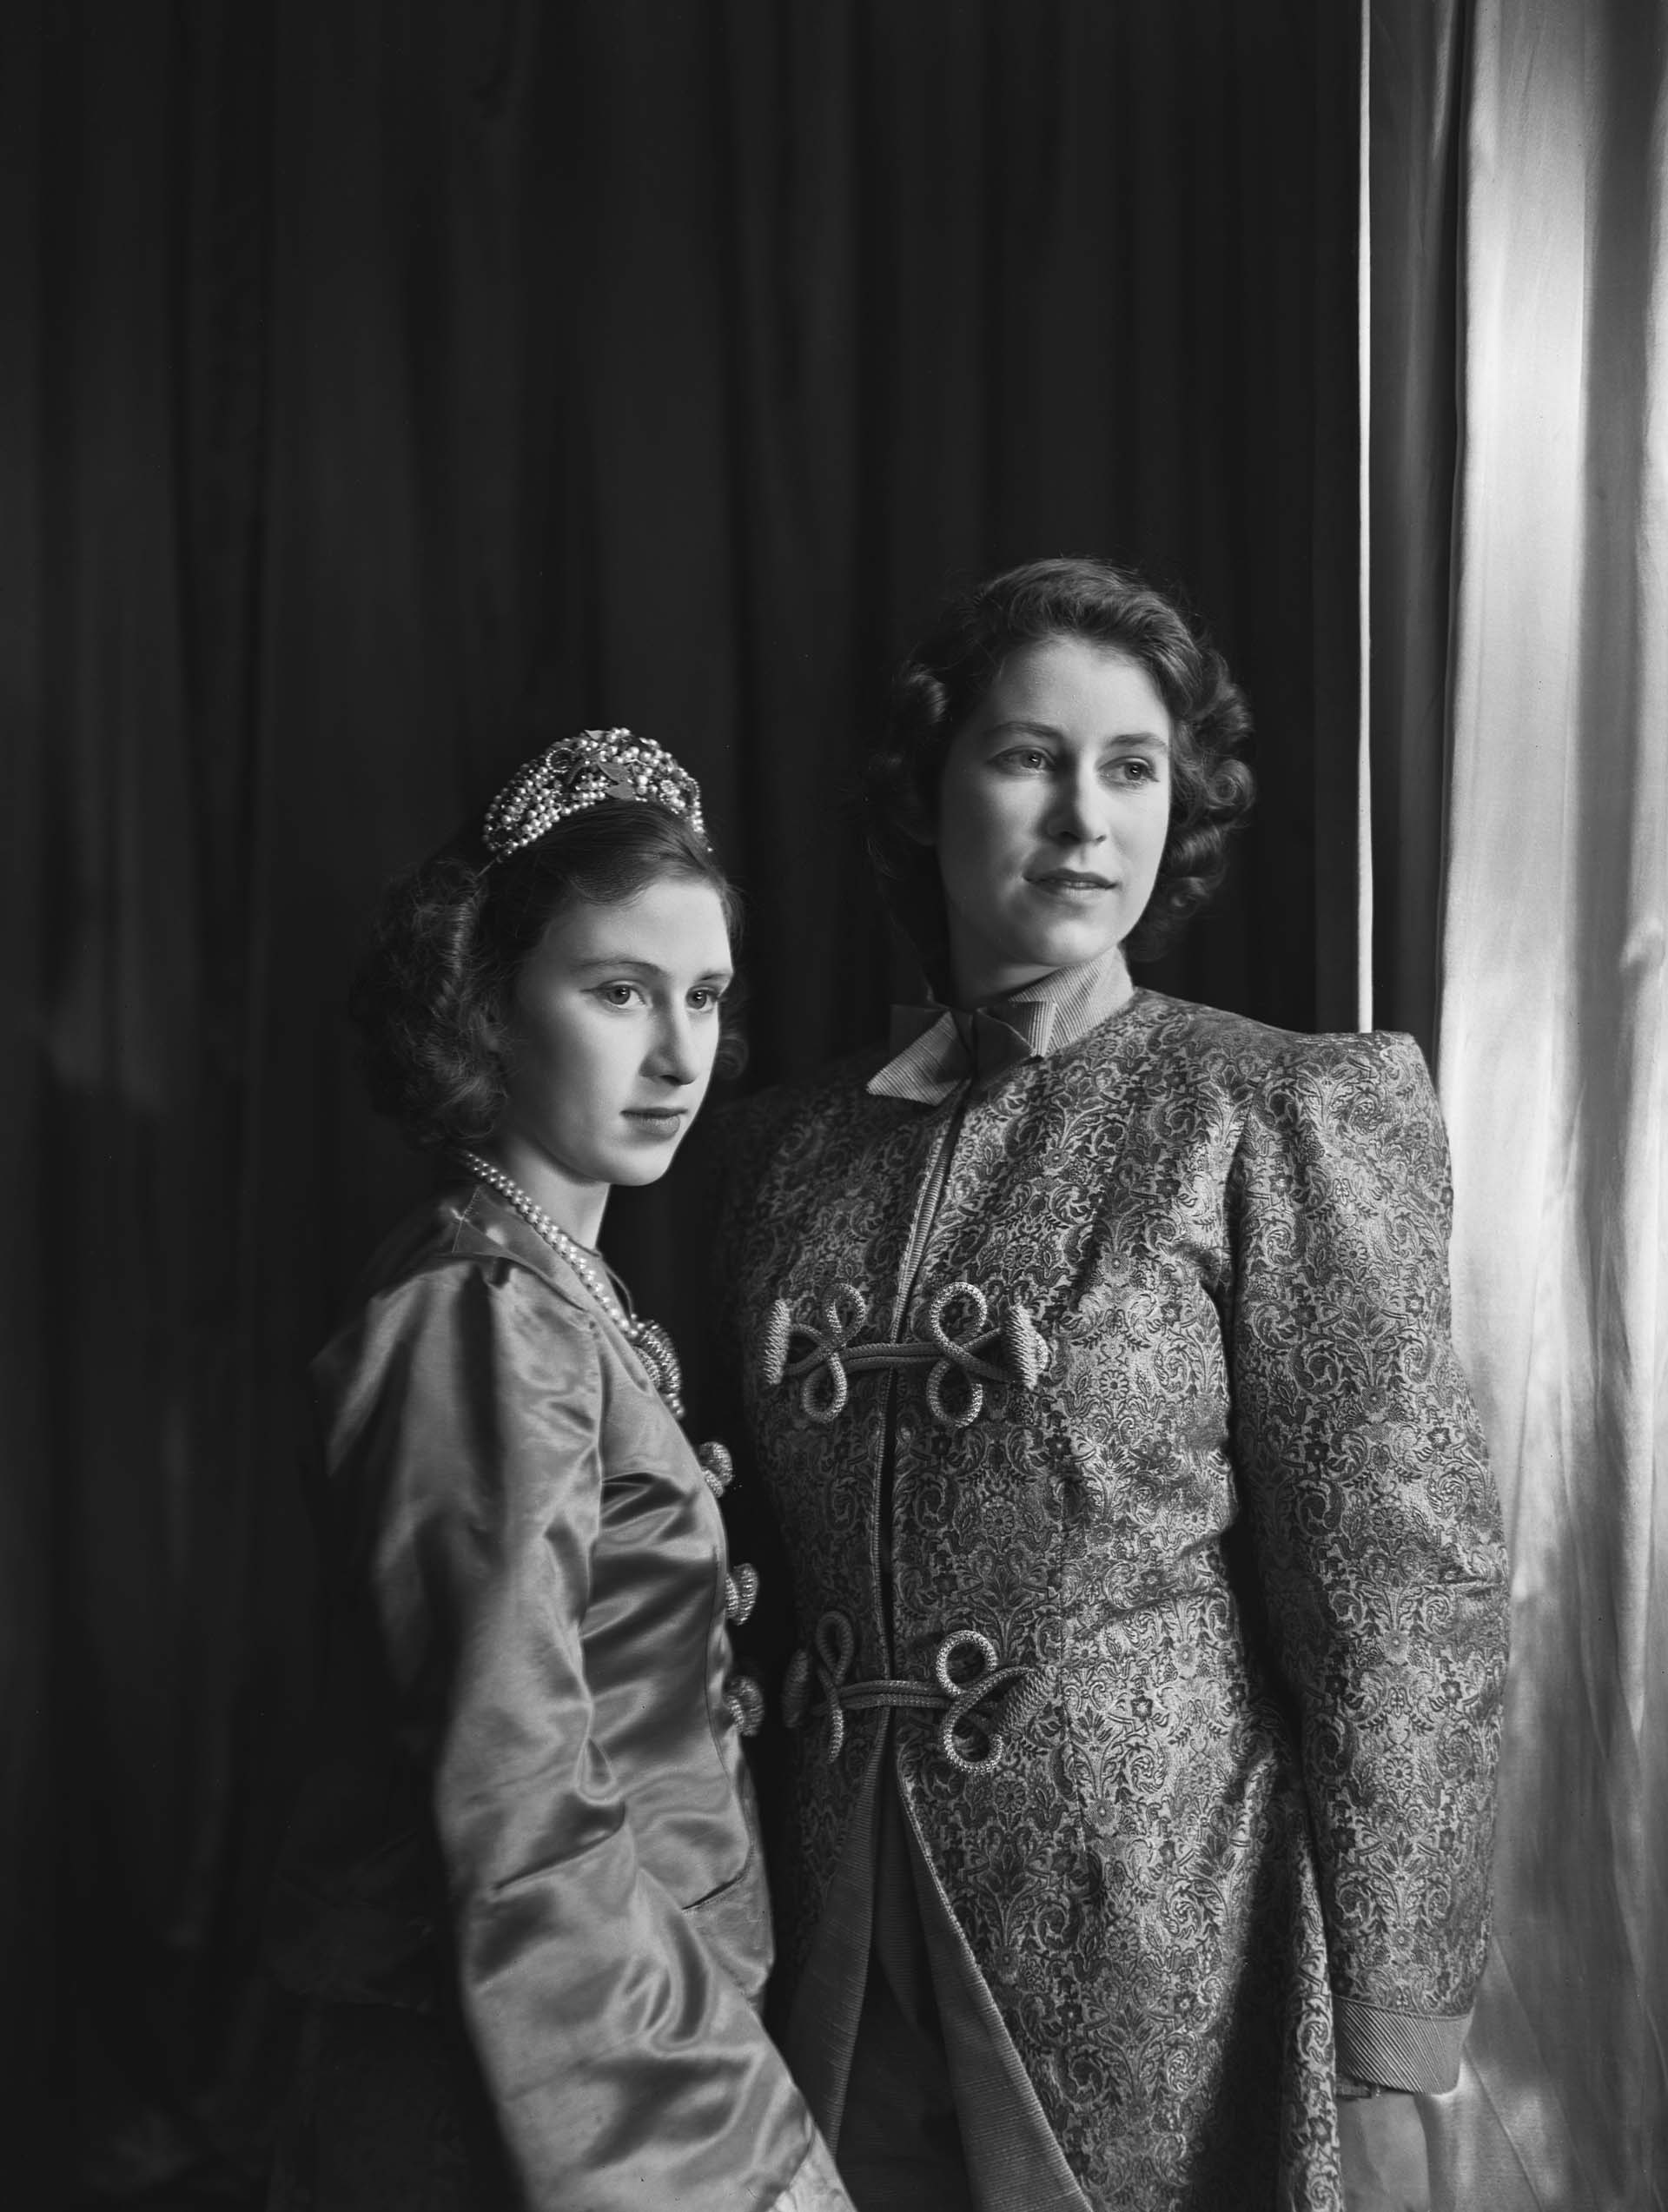 La Princesa Isabel (Reina Isabel II) y la Princesa Margarita (1930-2002), ambas en traje, fotografiadas antes de una producción de pantomima real de "Aladino" en el Castillo de Windsor, Berkshire, Gran Bretaña, 15 de diciembre de 1943. (Photo by Lisa Sheridan/Studio Lisa/Getty Images)